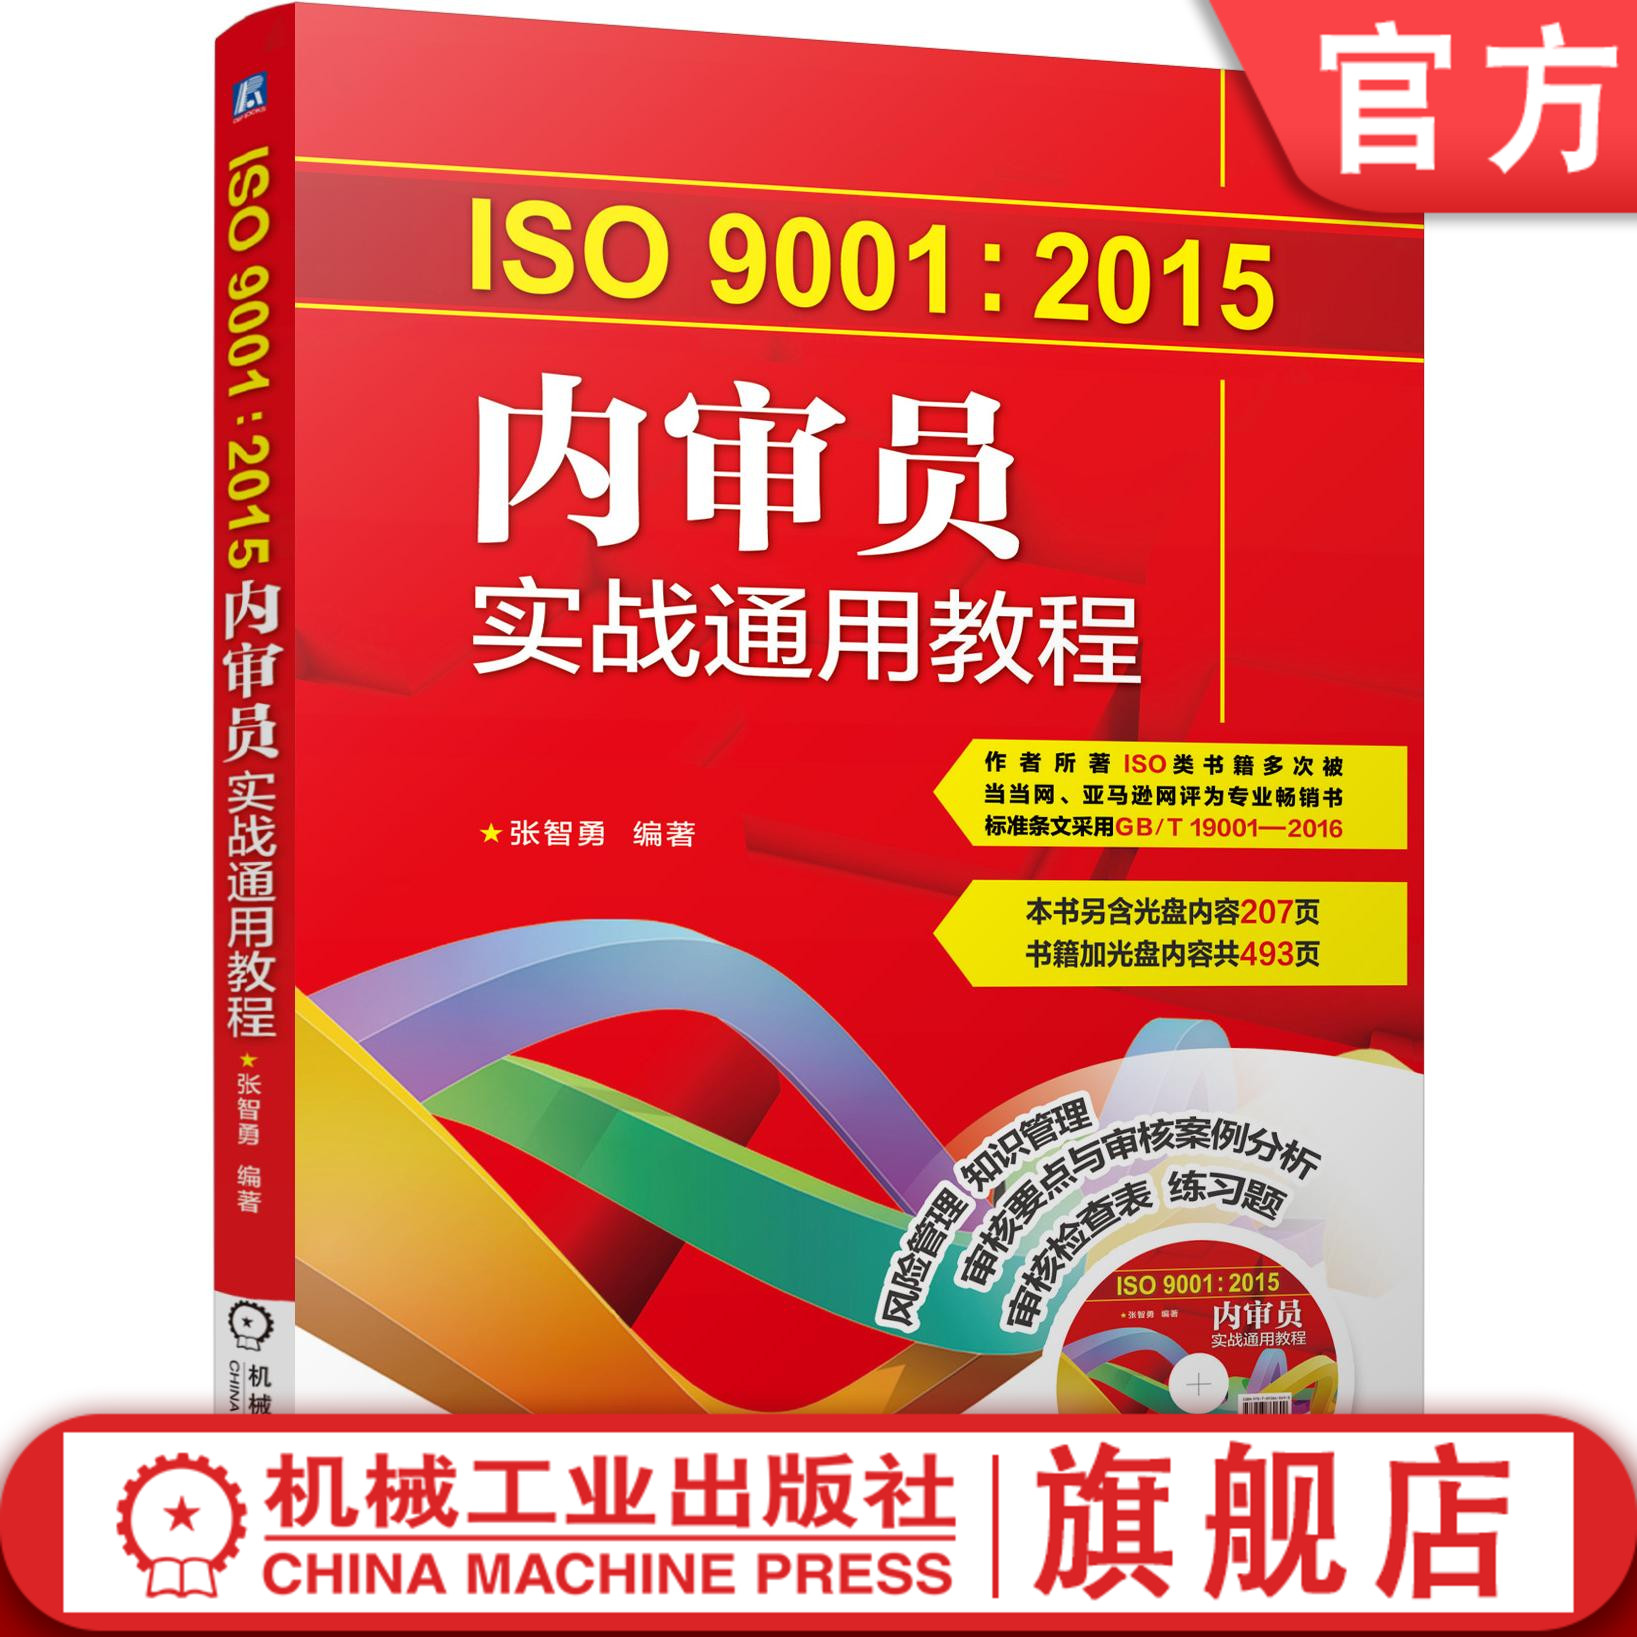 官网正版 ISO9001 2015内审员实战通用教程 张智勇 质量管理体系系列标准 内部质量管理体系审核 评审计划